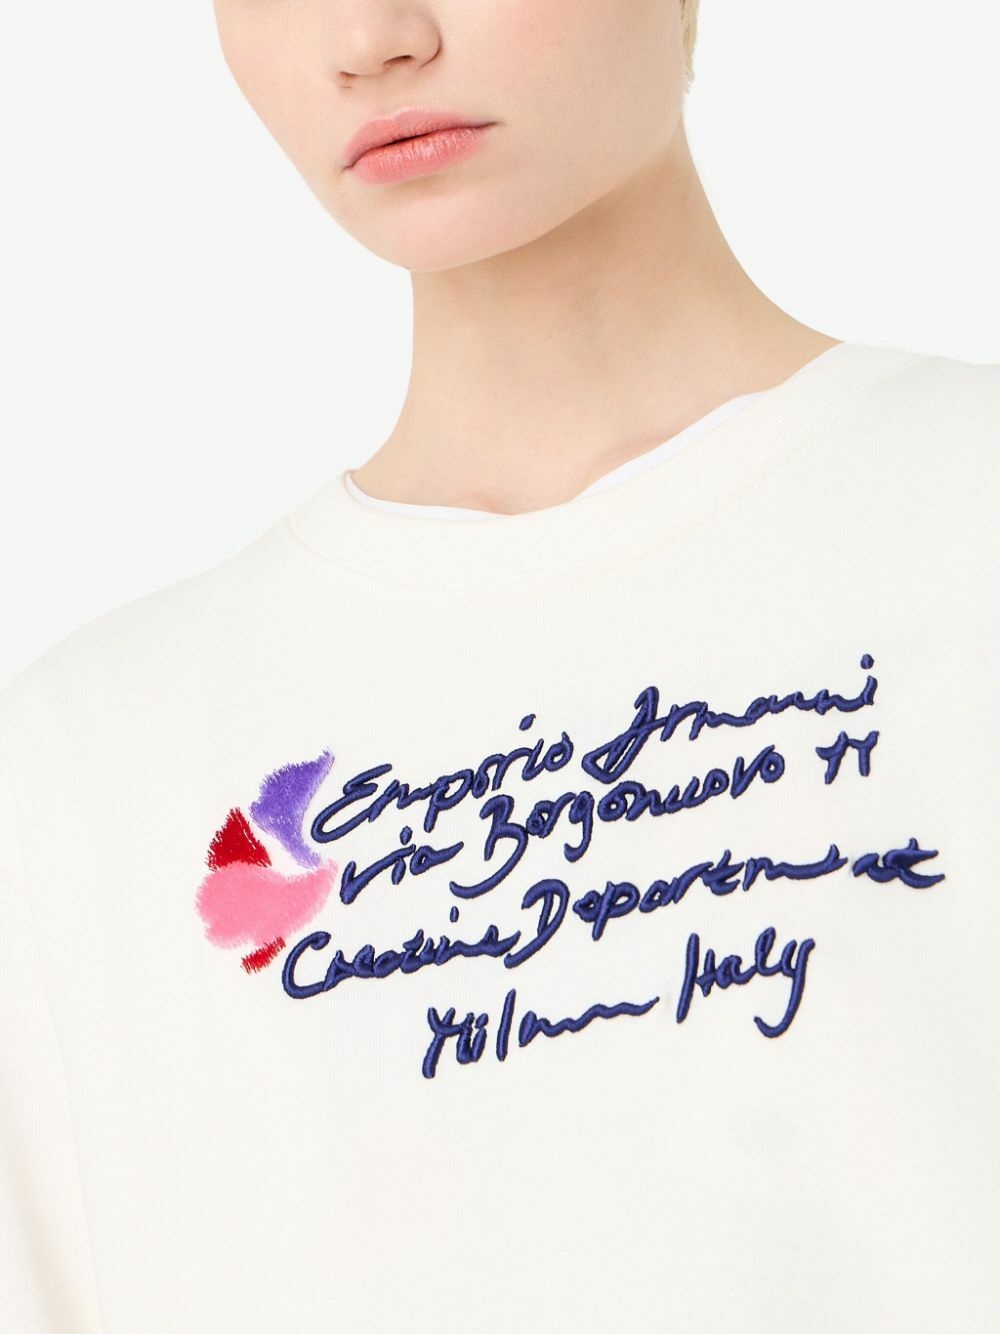 EMPORIO ARMANI - Logo Cotton Crewneck Sweatshirt